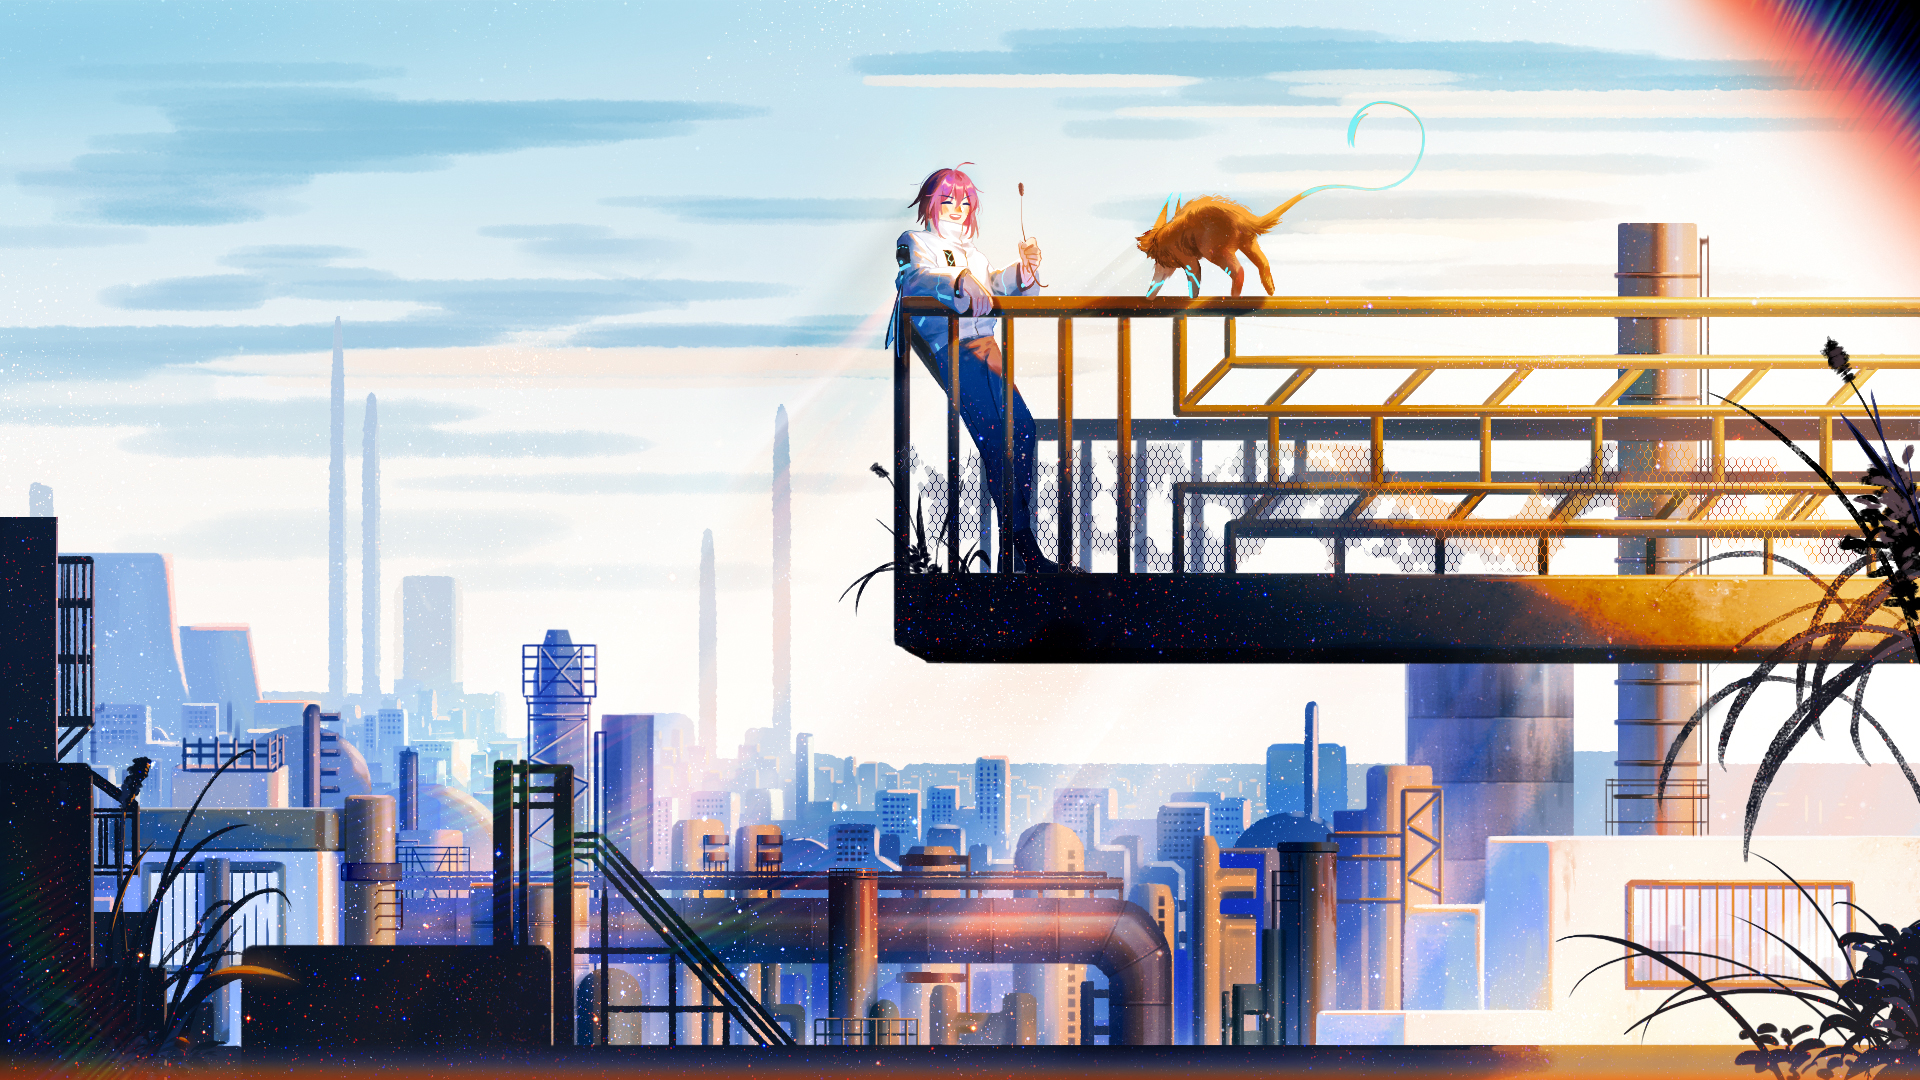 Boy Anime City Art - HD Wallpaper 